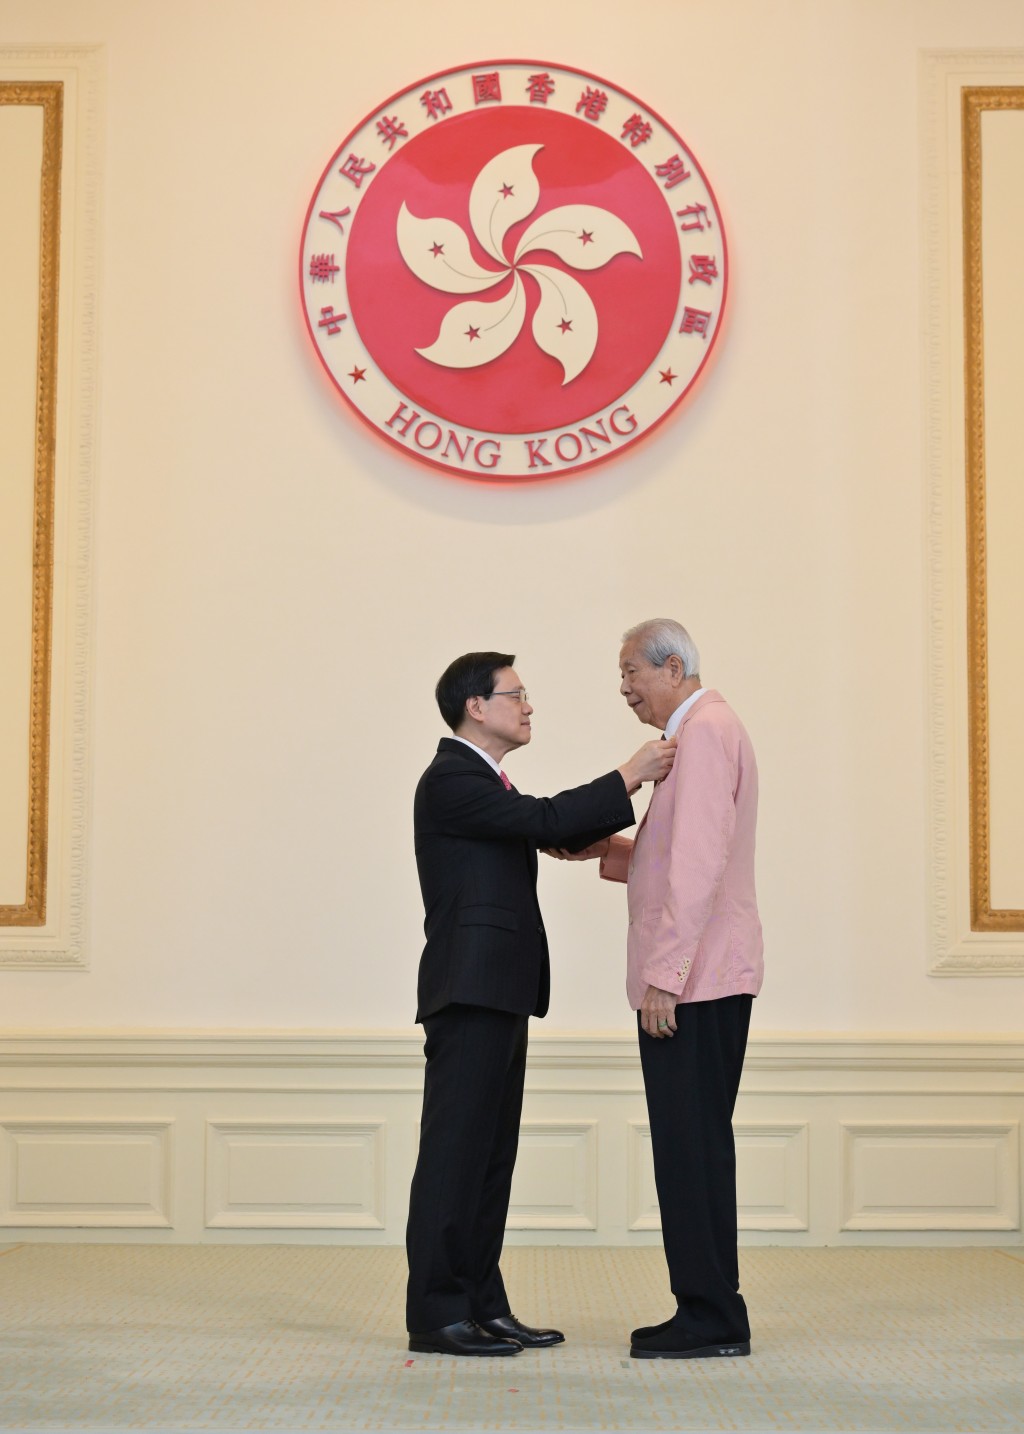 香港福建社团联会荣誉顾问施子清获颁大紫荆勋章。政府新闻处图片